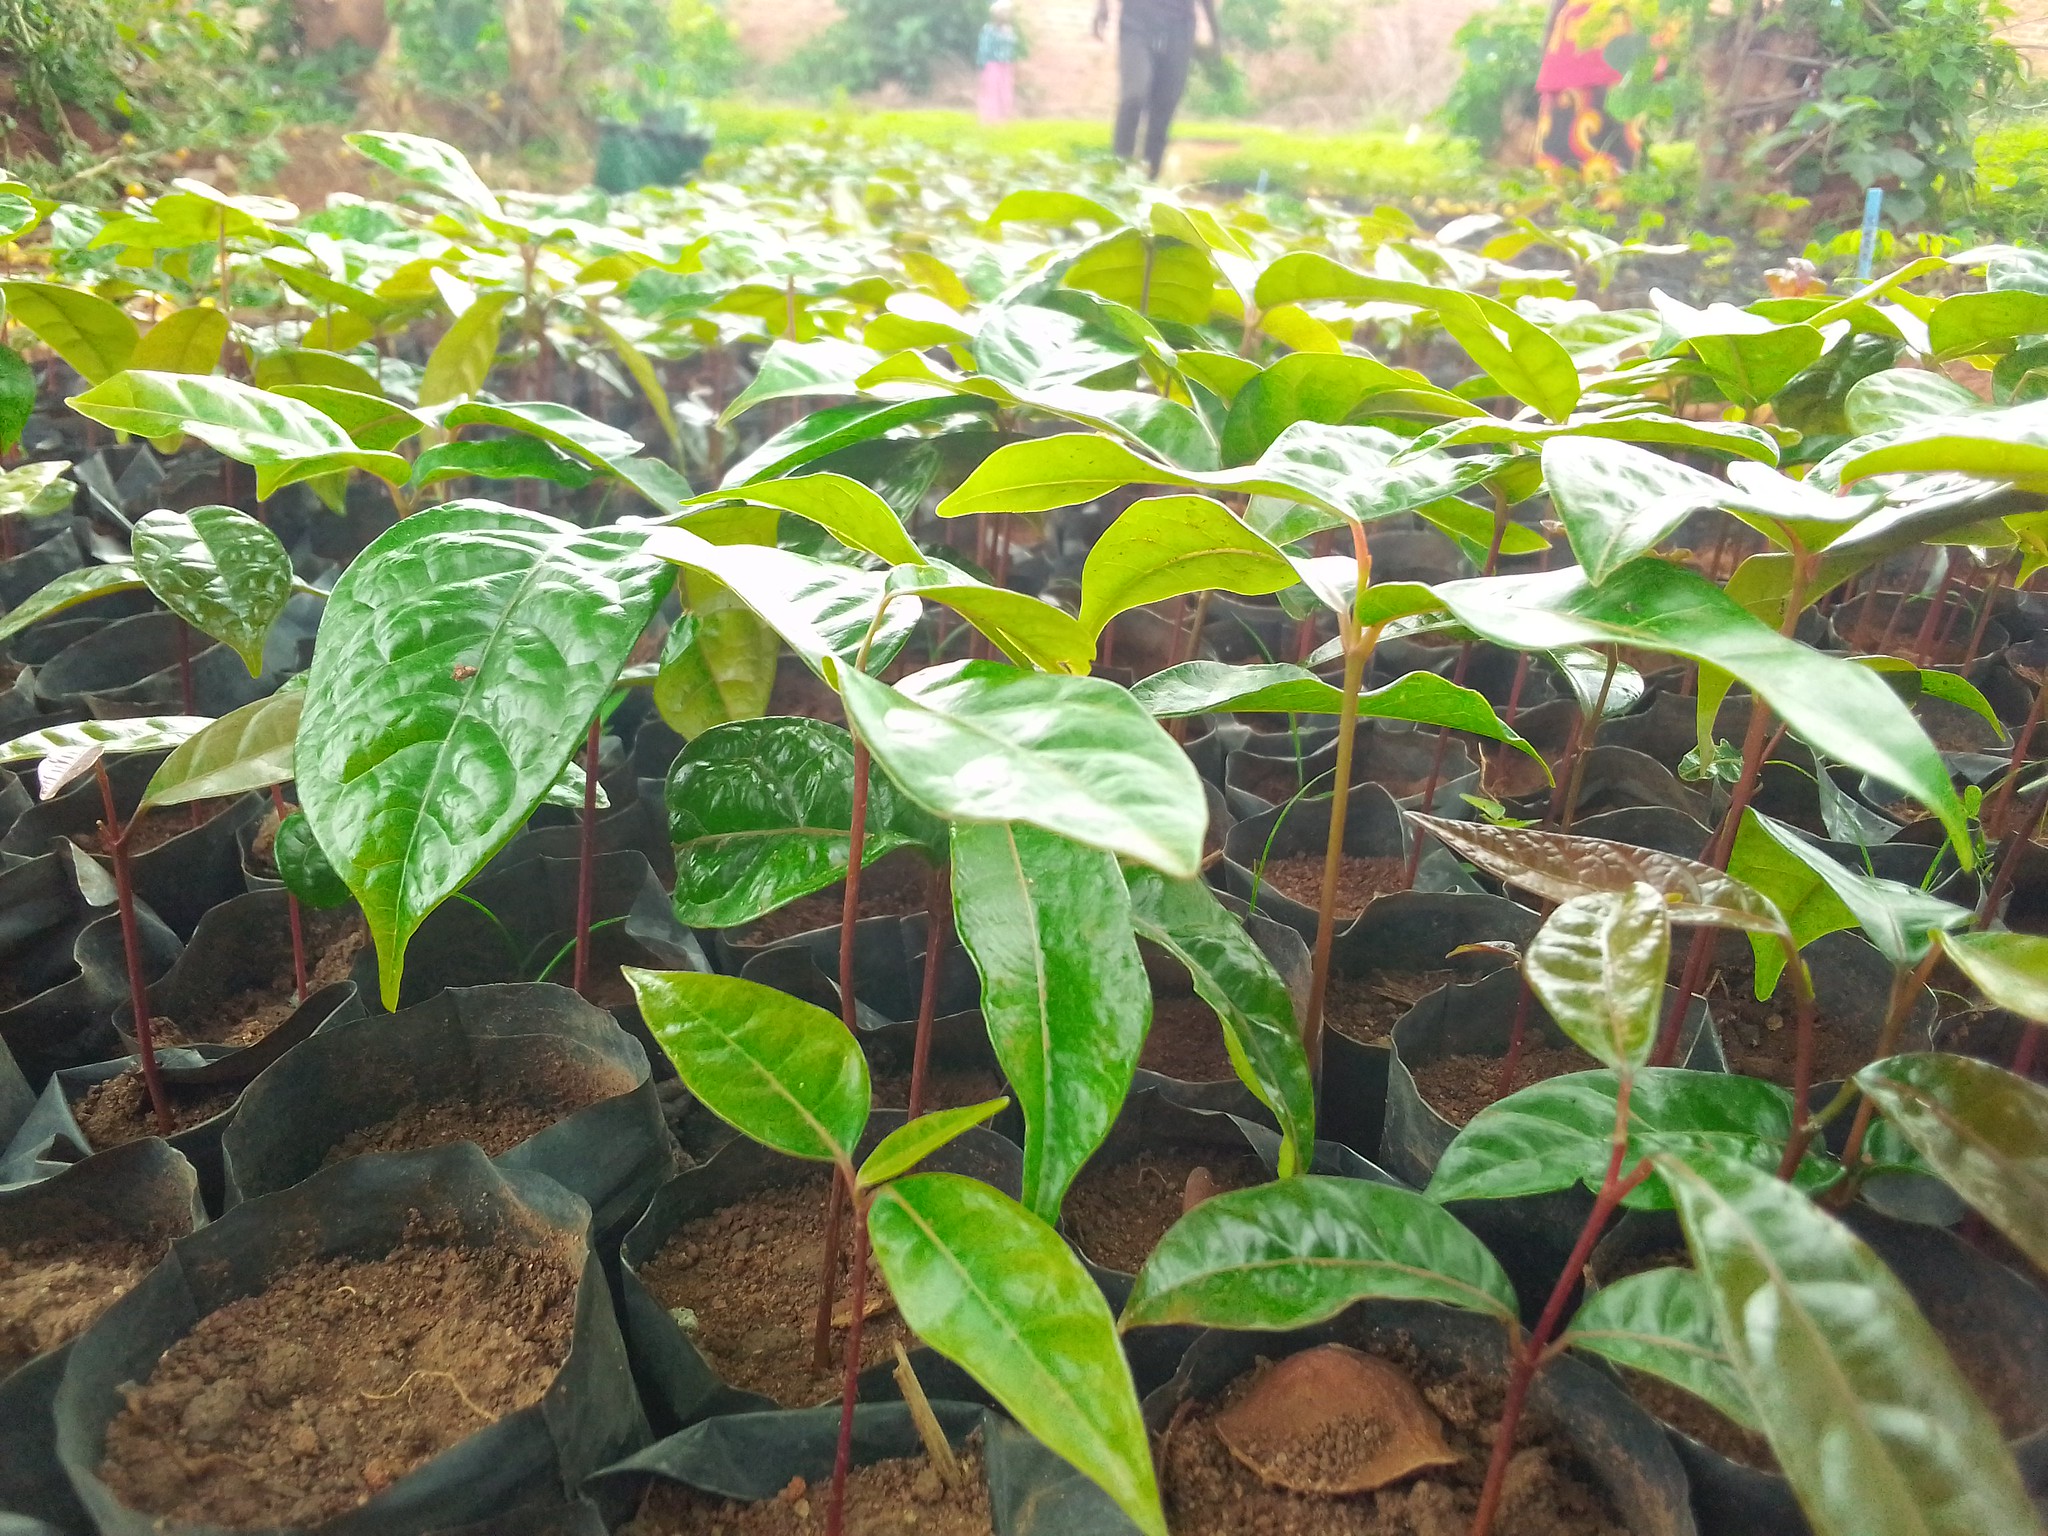 M'bawa (Khaya Nyasica) seedlings